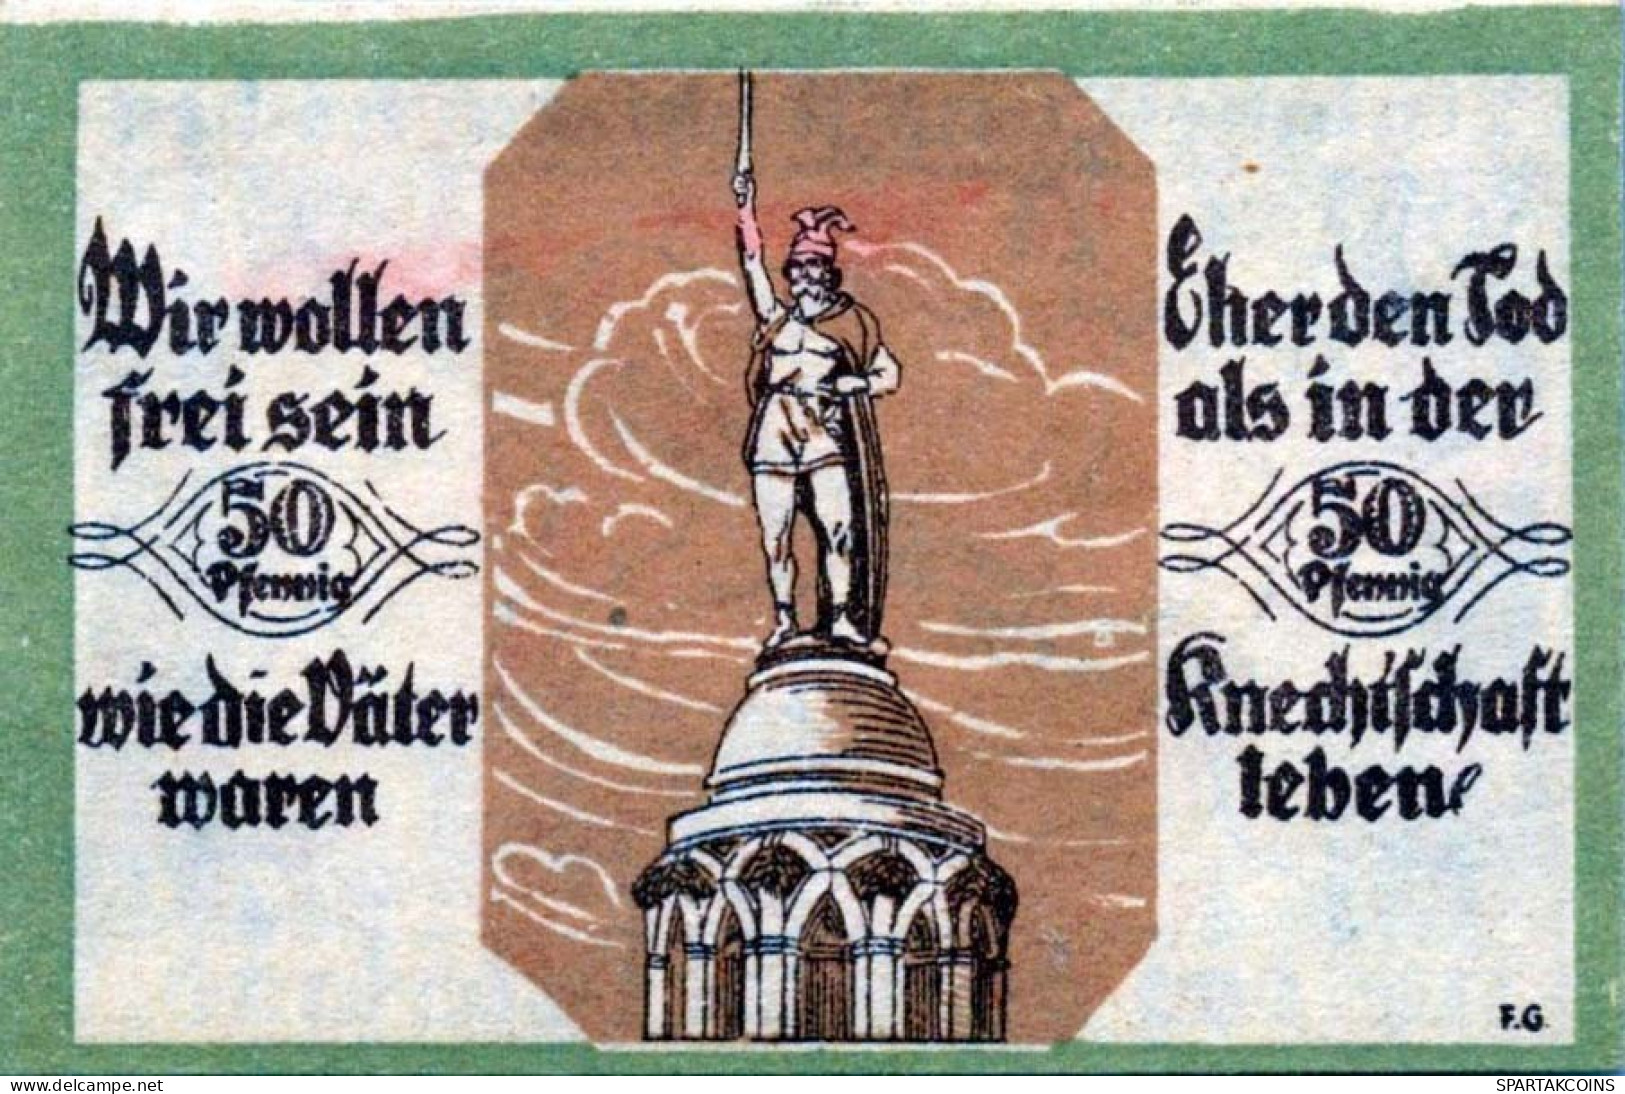 50 PFENNIG 1921 Stadt SOLTAU Hanover UNC DEUTSCHLAND Notgeld Banknote #PI086 - [11] Local Banknote Issues